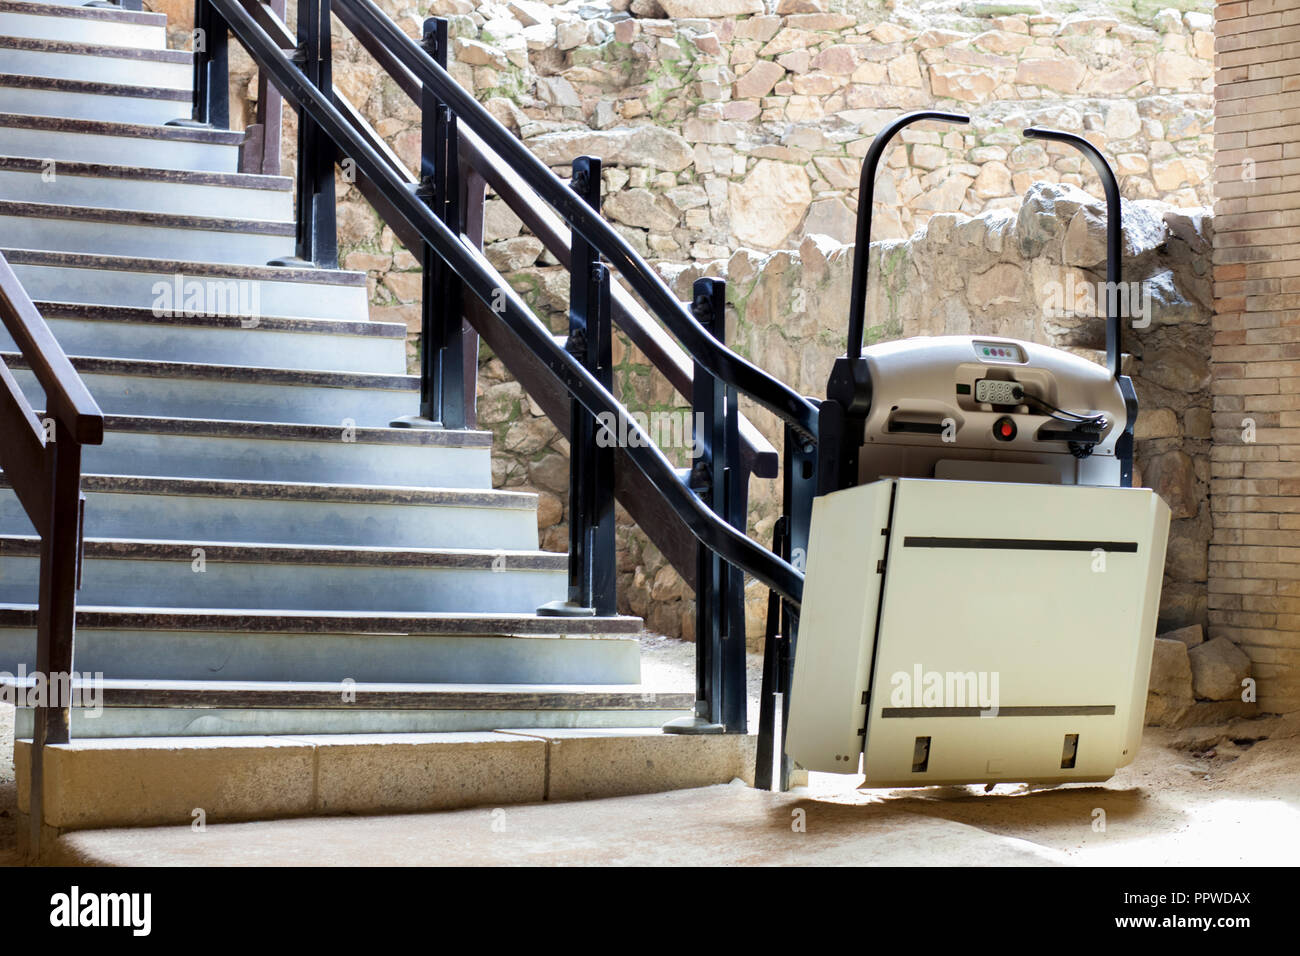 Treppenlift für behinderte und ältere Menschen Treppen an den archäologischen Stätte zu klettern. Archäologie und Behinderung Konzept Stockfoto